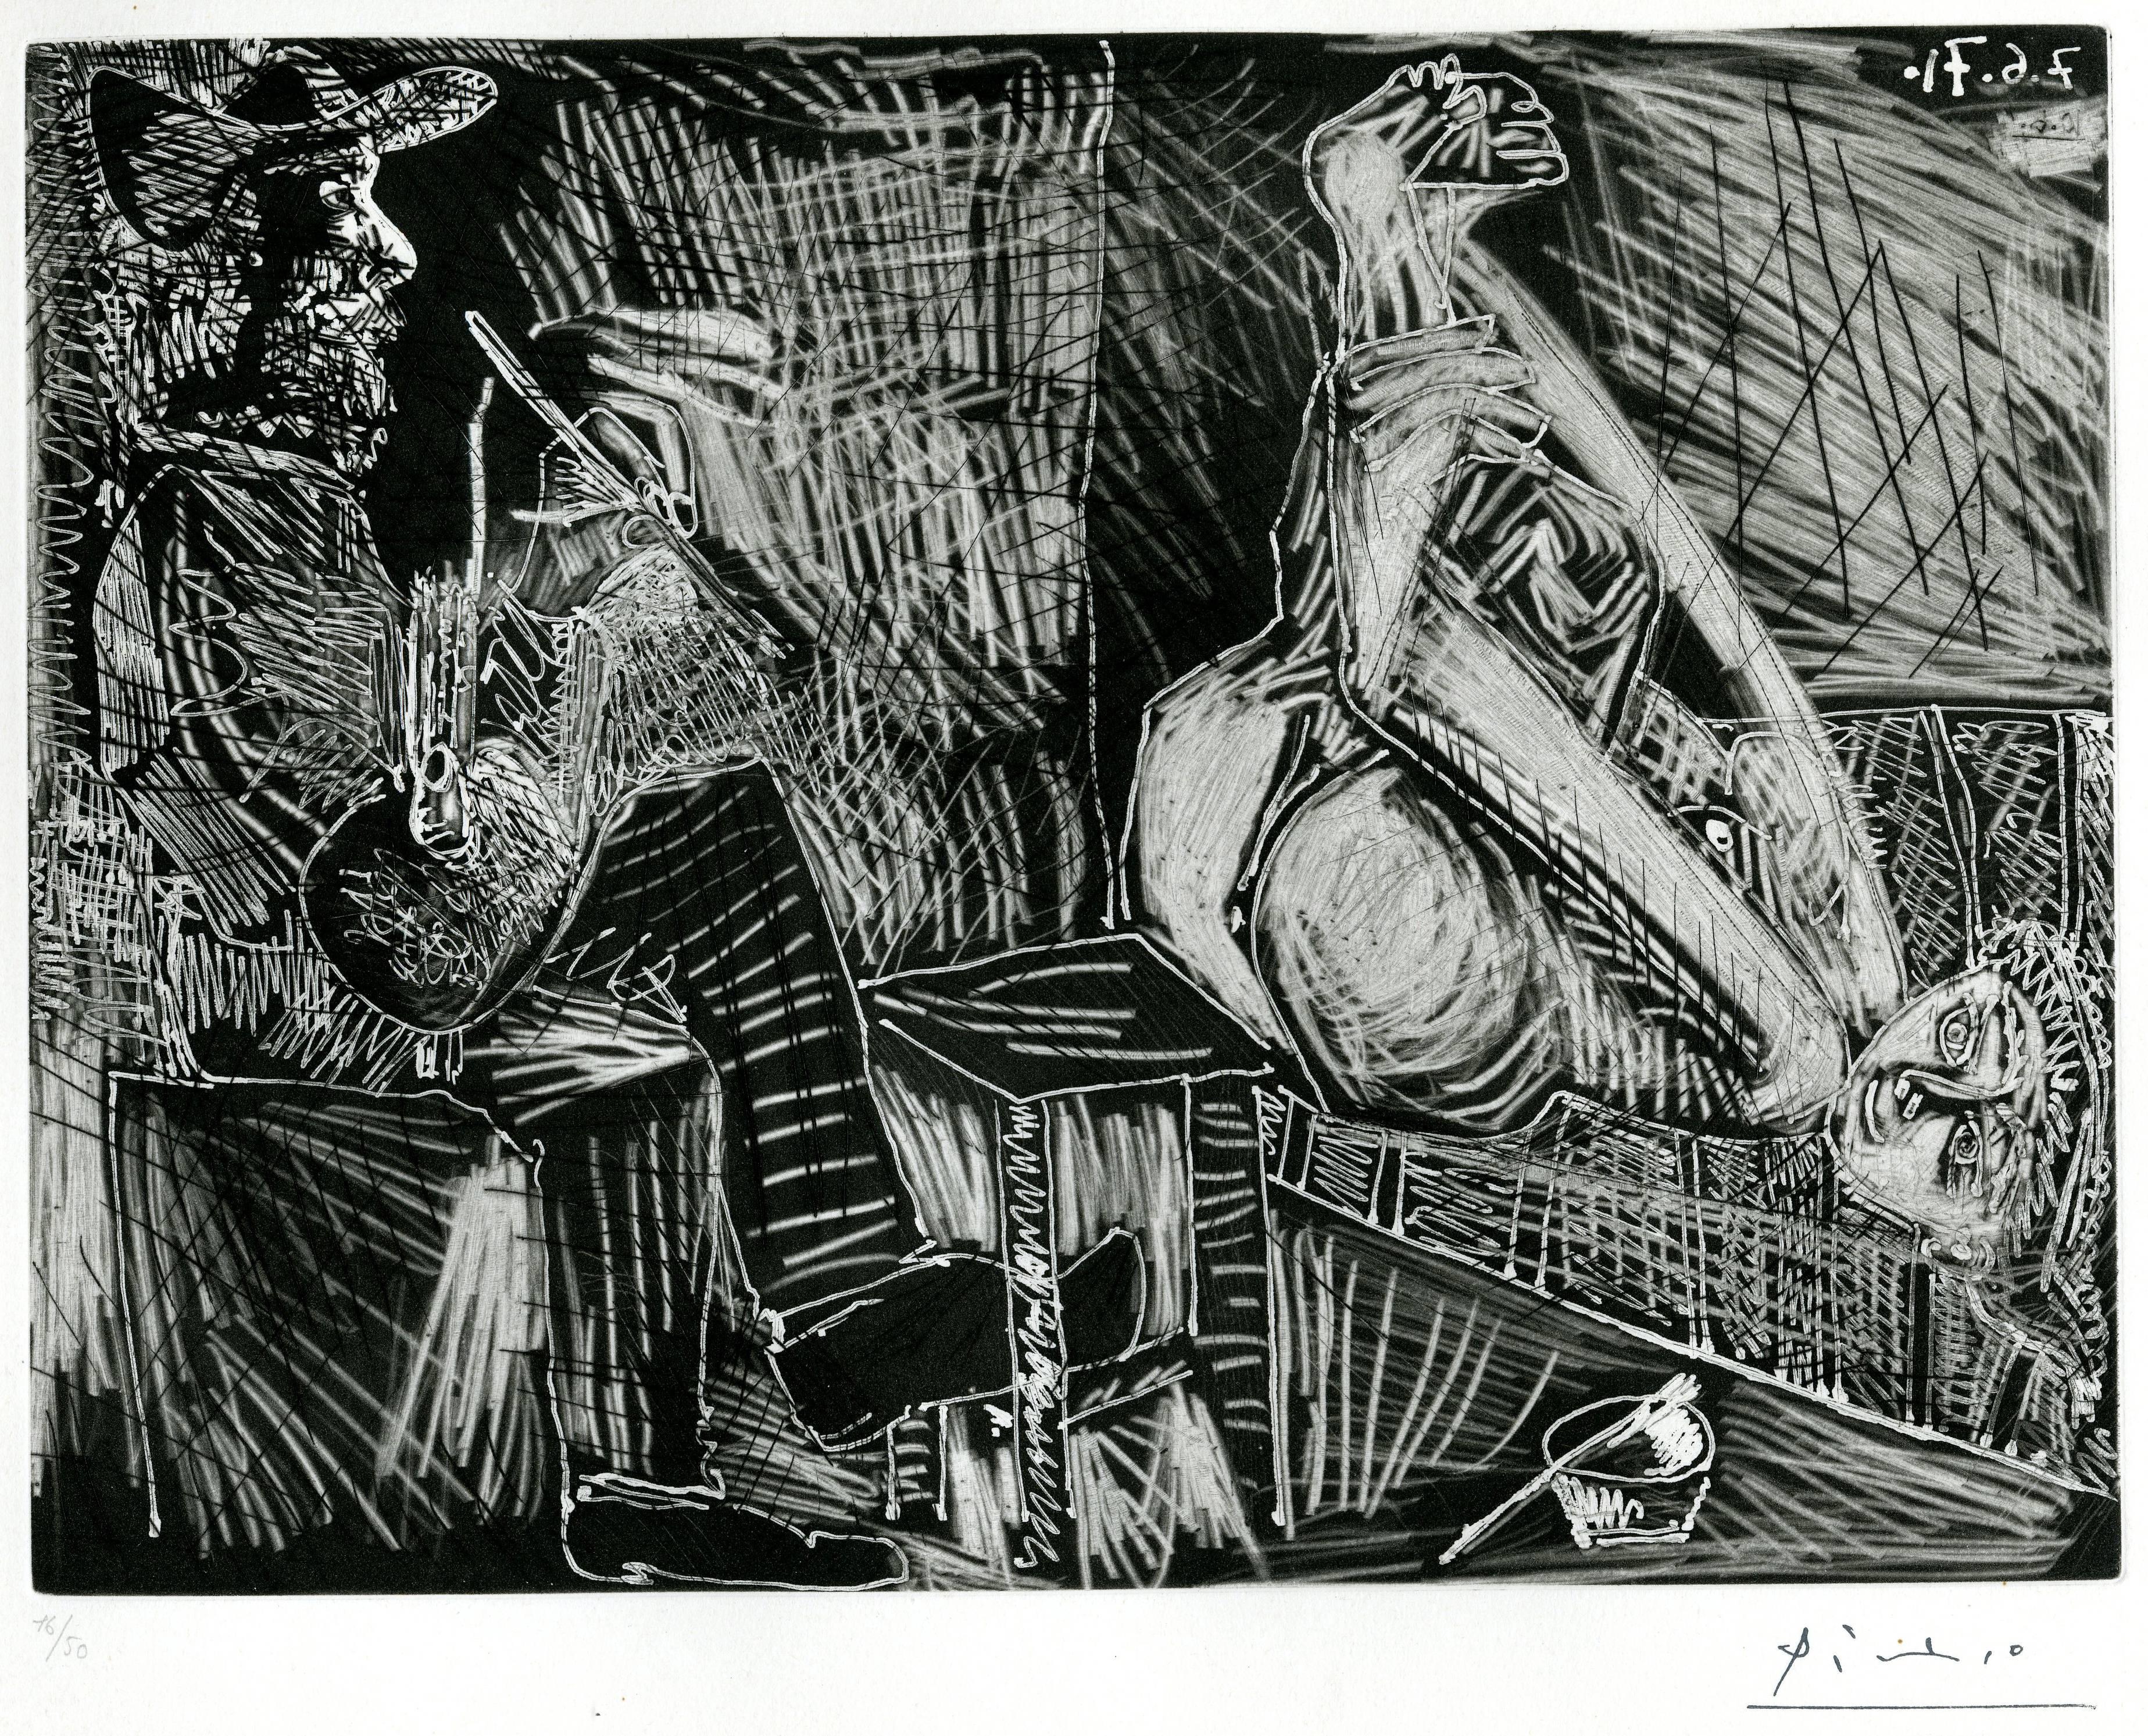 Pablo Picasso Abstract Print - Peintre au sabot et un chausson avec sa toile